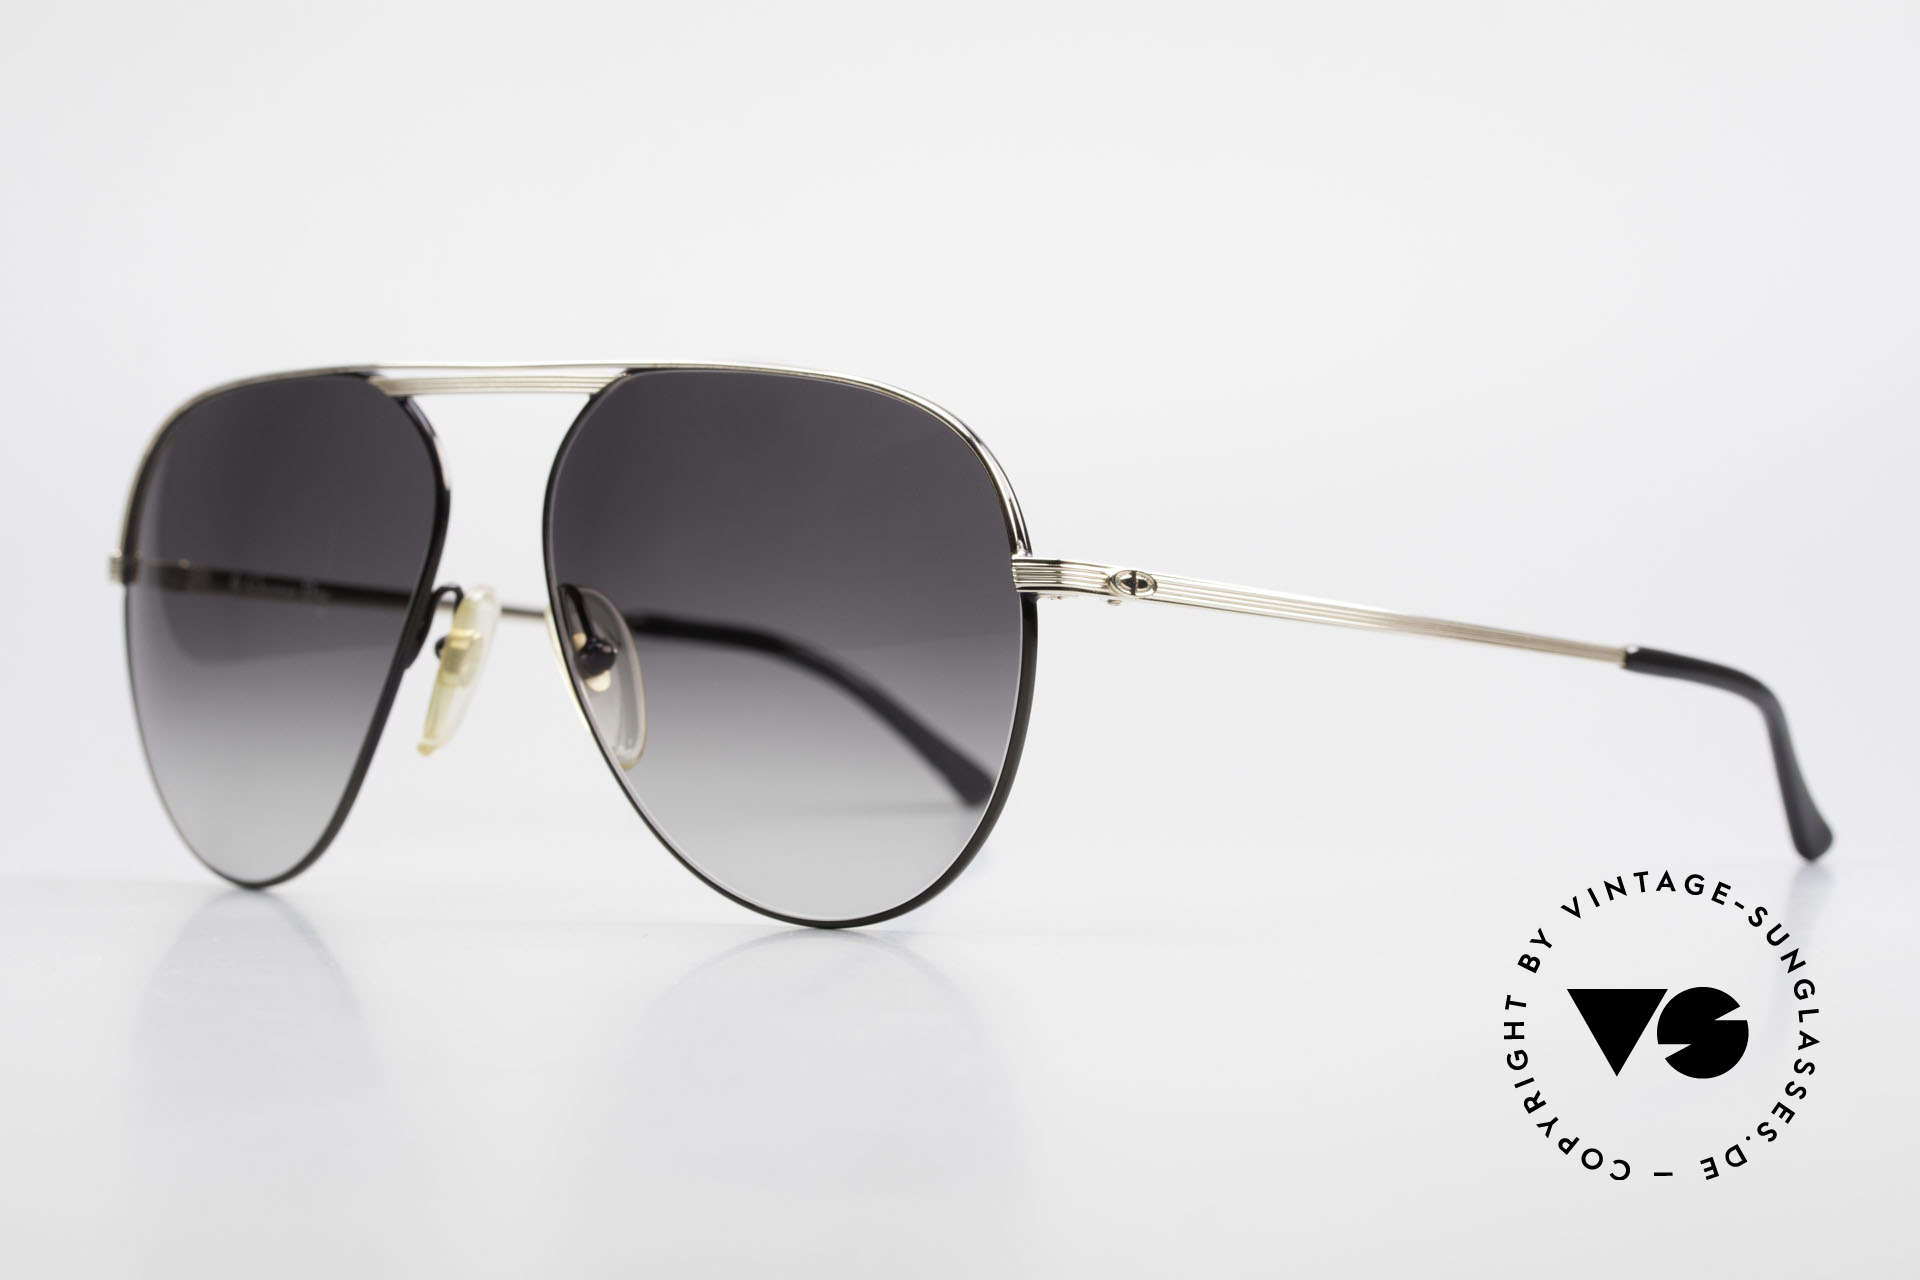 Christian Dior 2536 XXL 80er Vintage Sonnenbrille, XXL-Ausführung in Größe 61-15 (147mm Breite), Passend für Herren